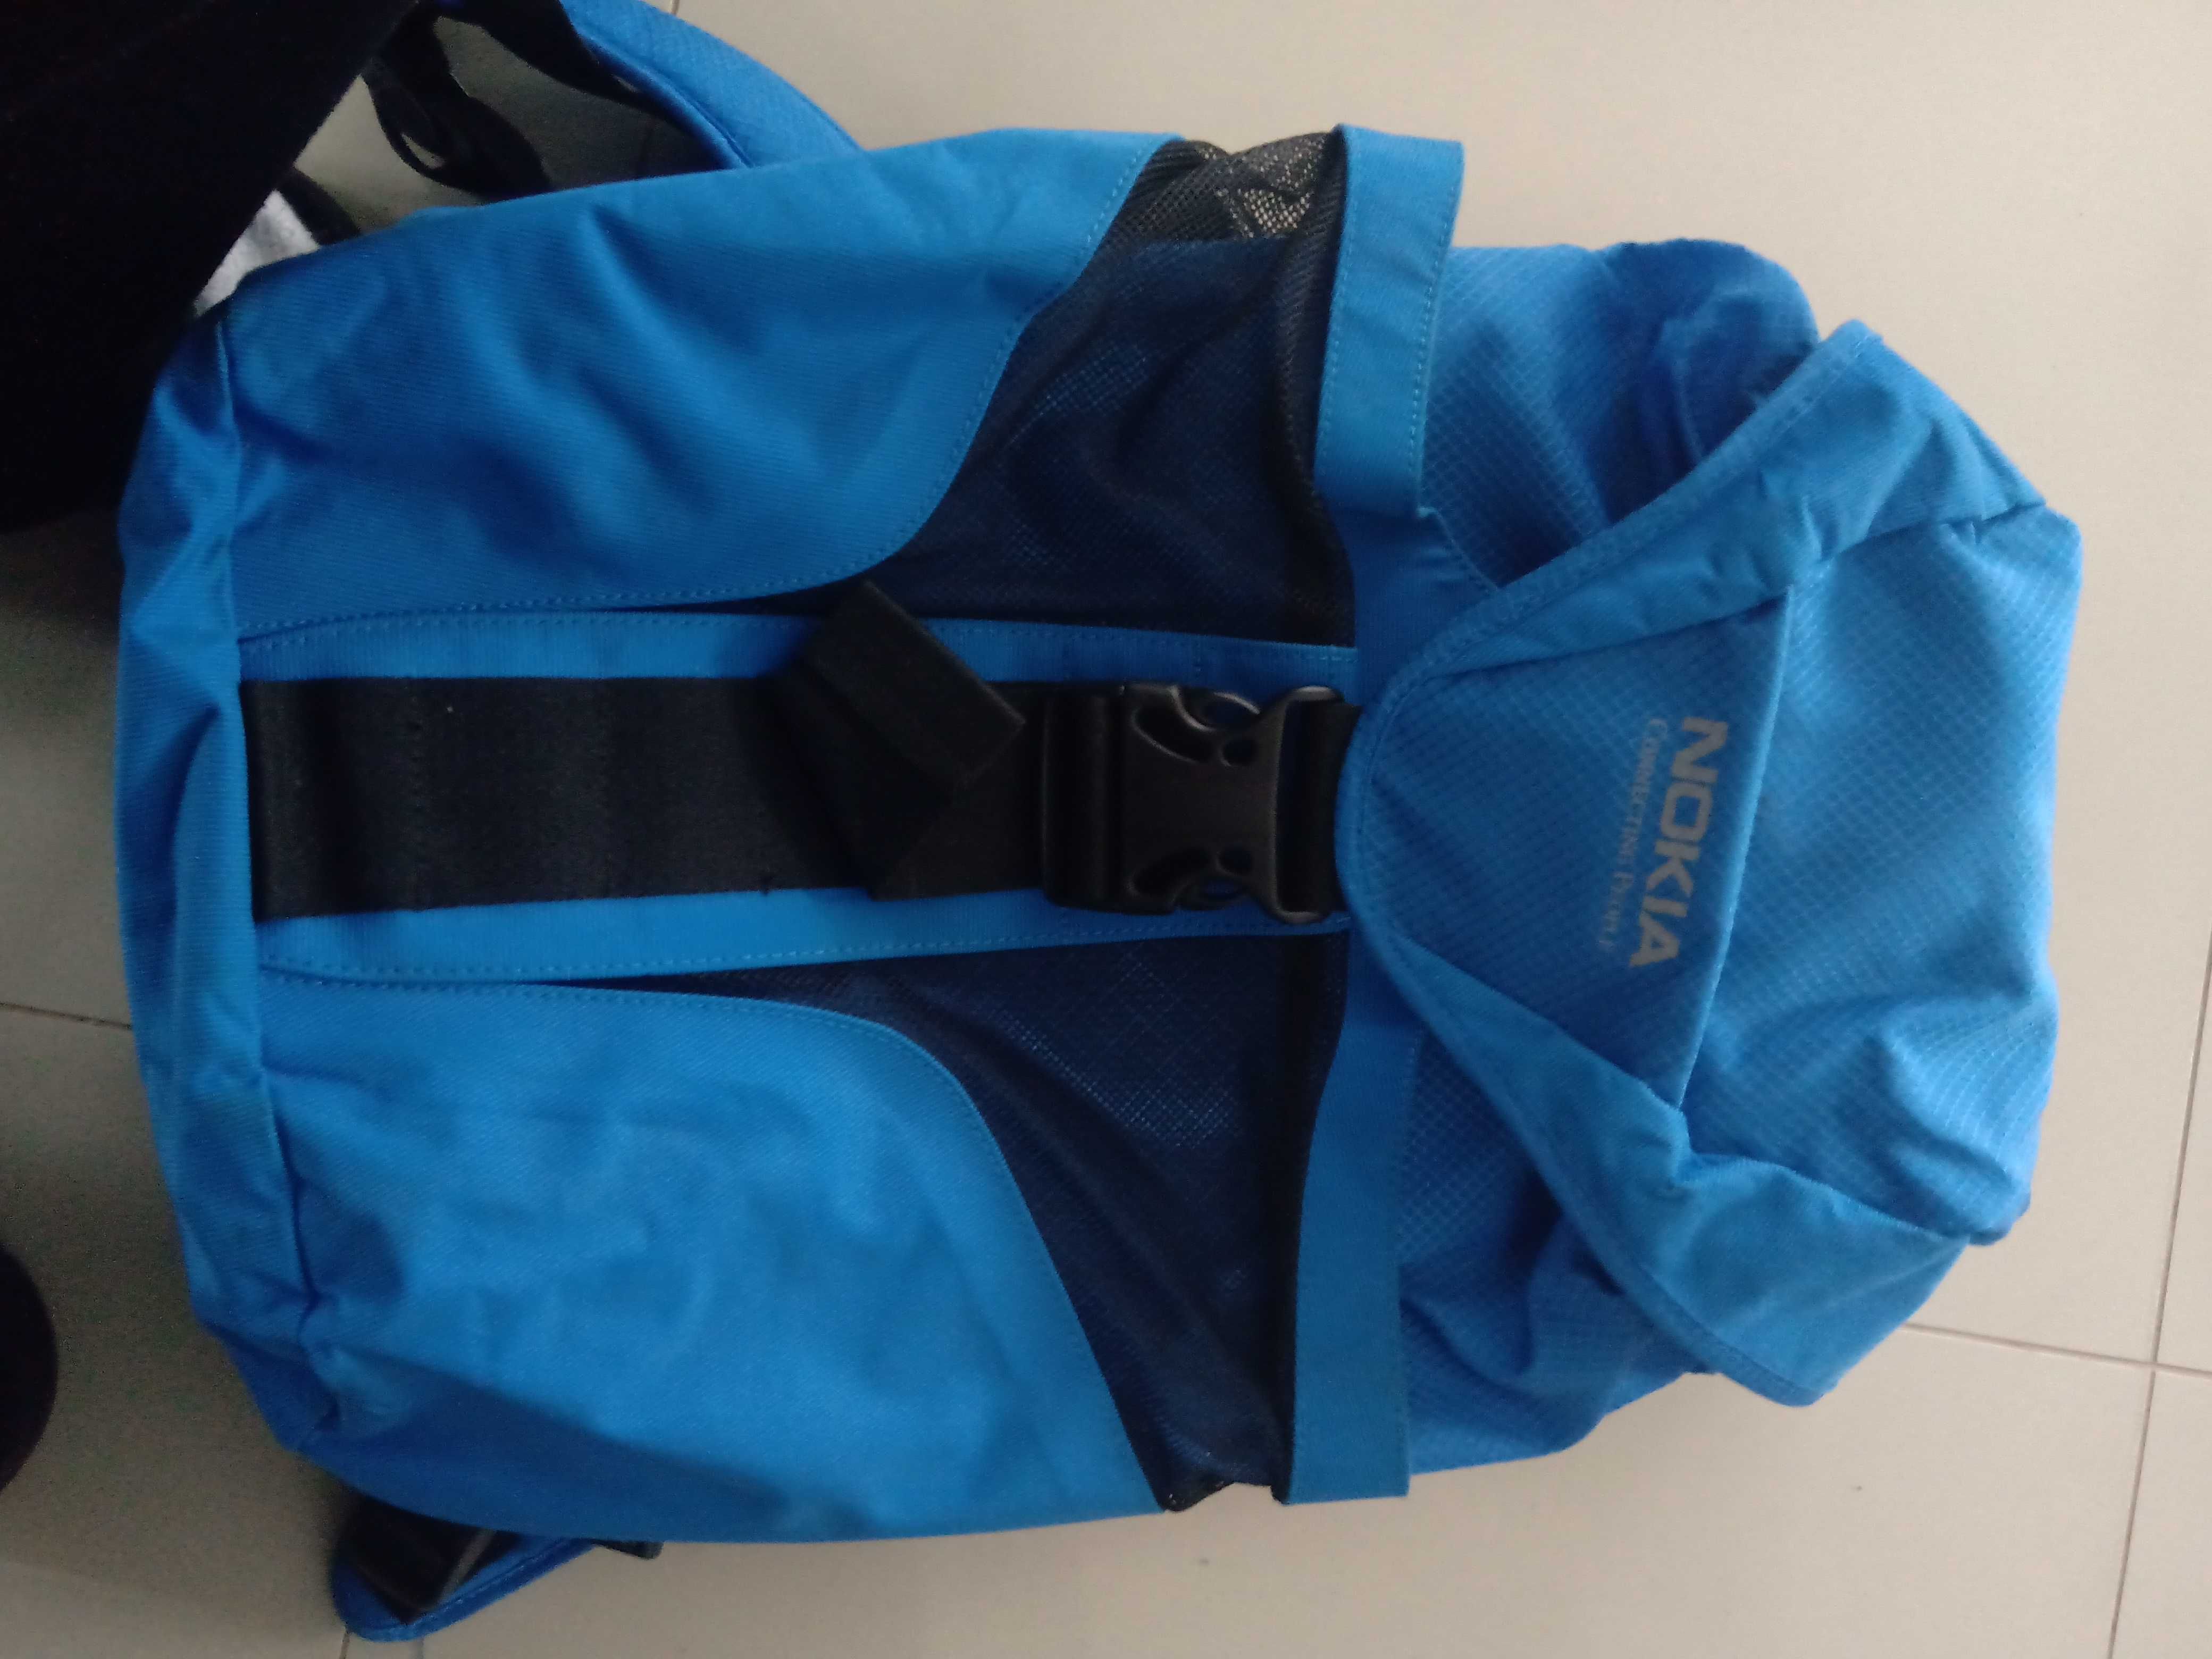 Plecak Nokia używany niebieski sportowy